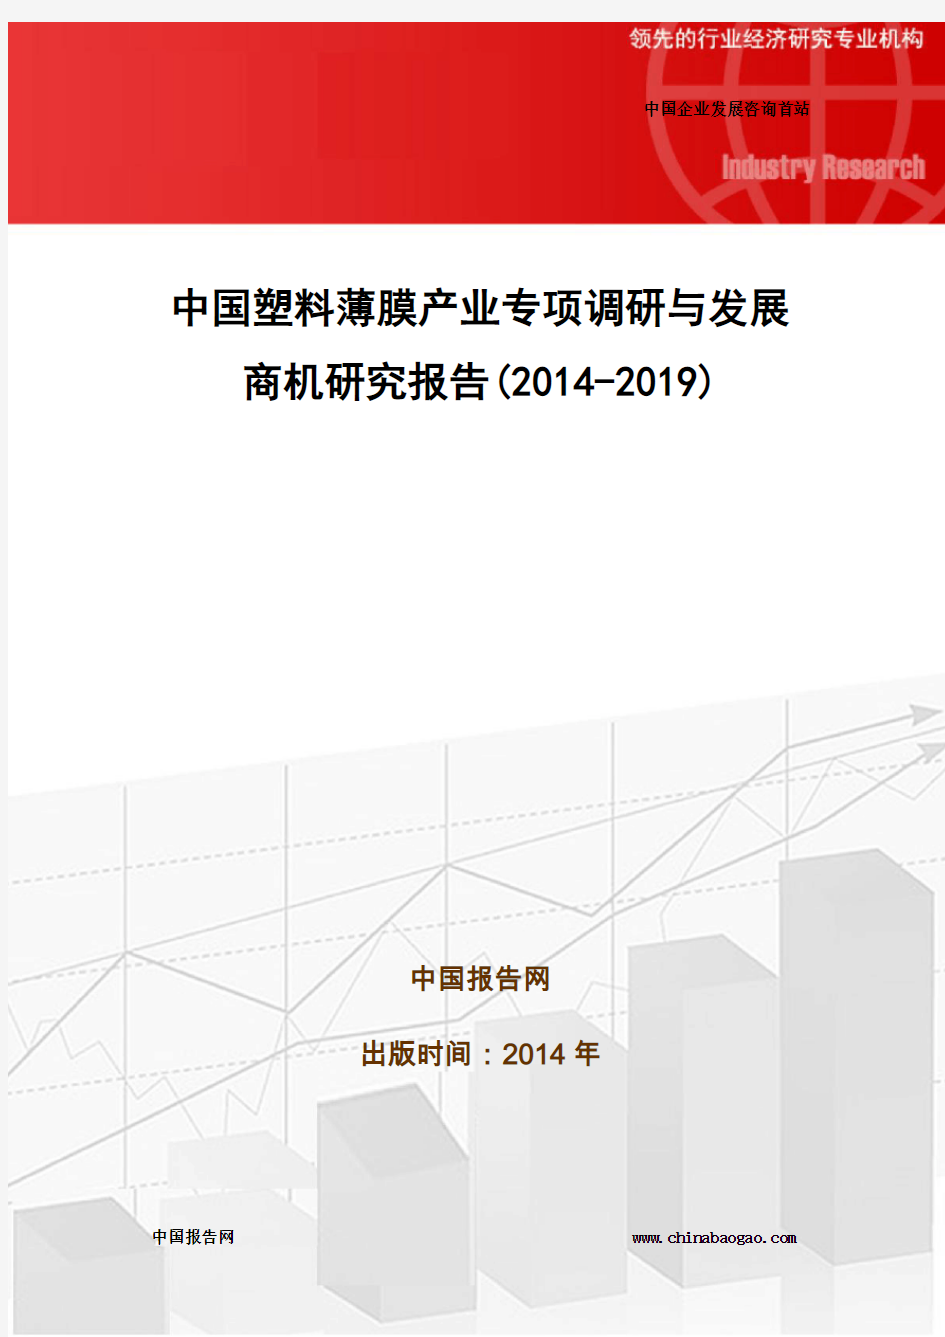 中国塑料薄膜产业专项调研与发展商机研究报告(2014-2019)